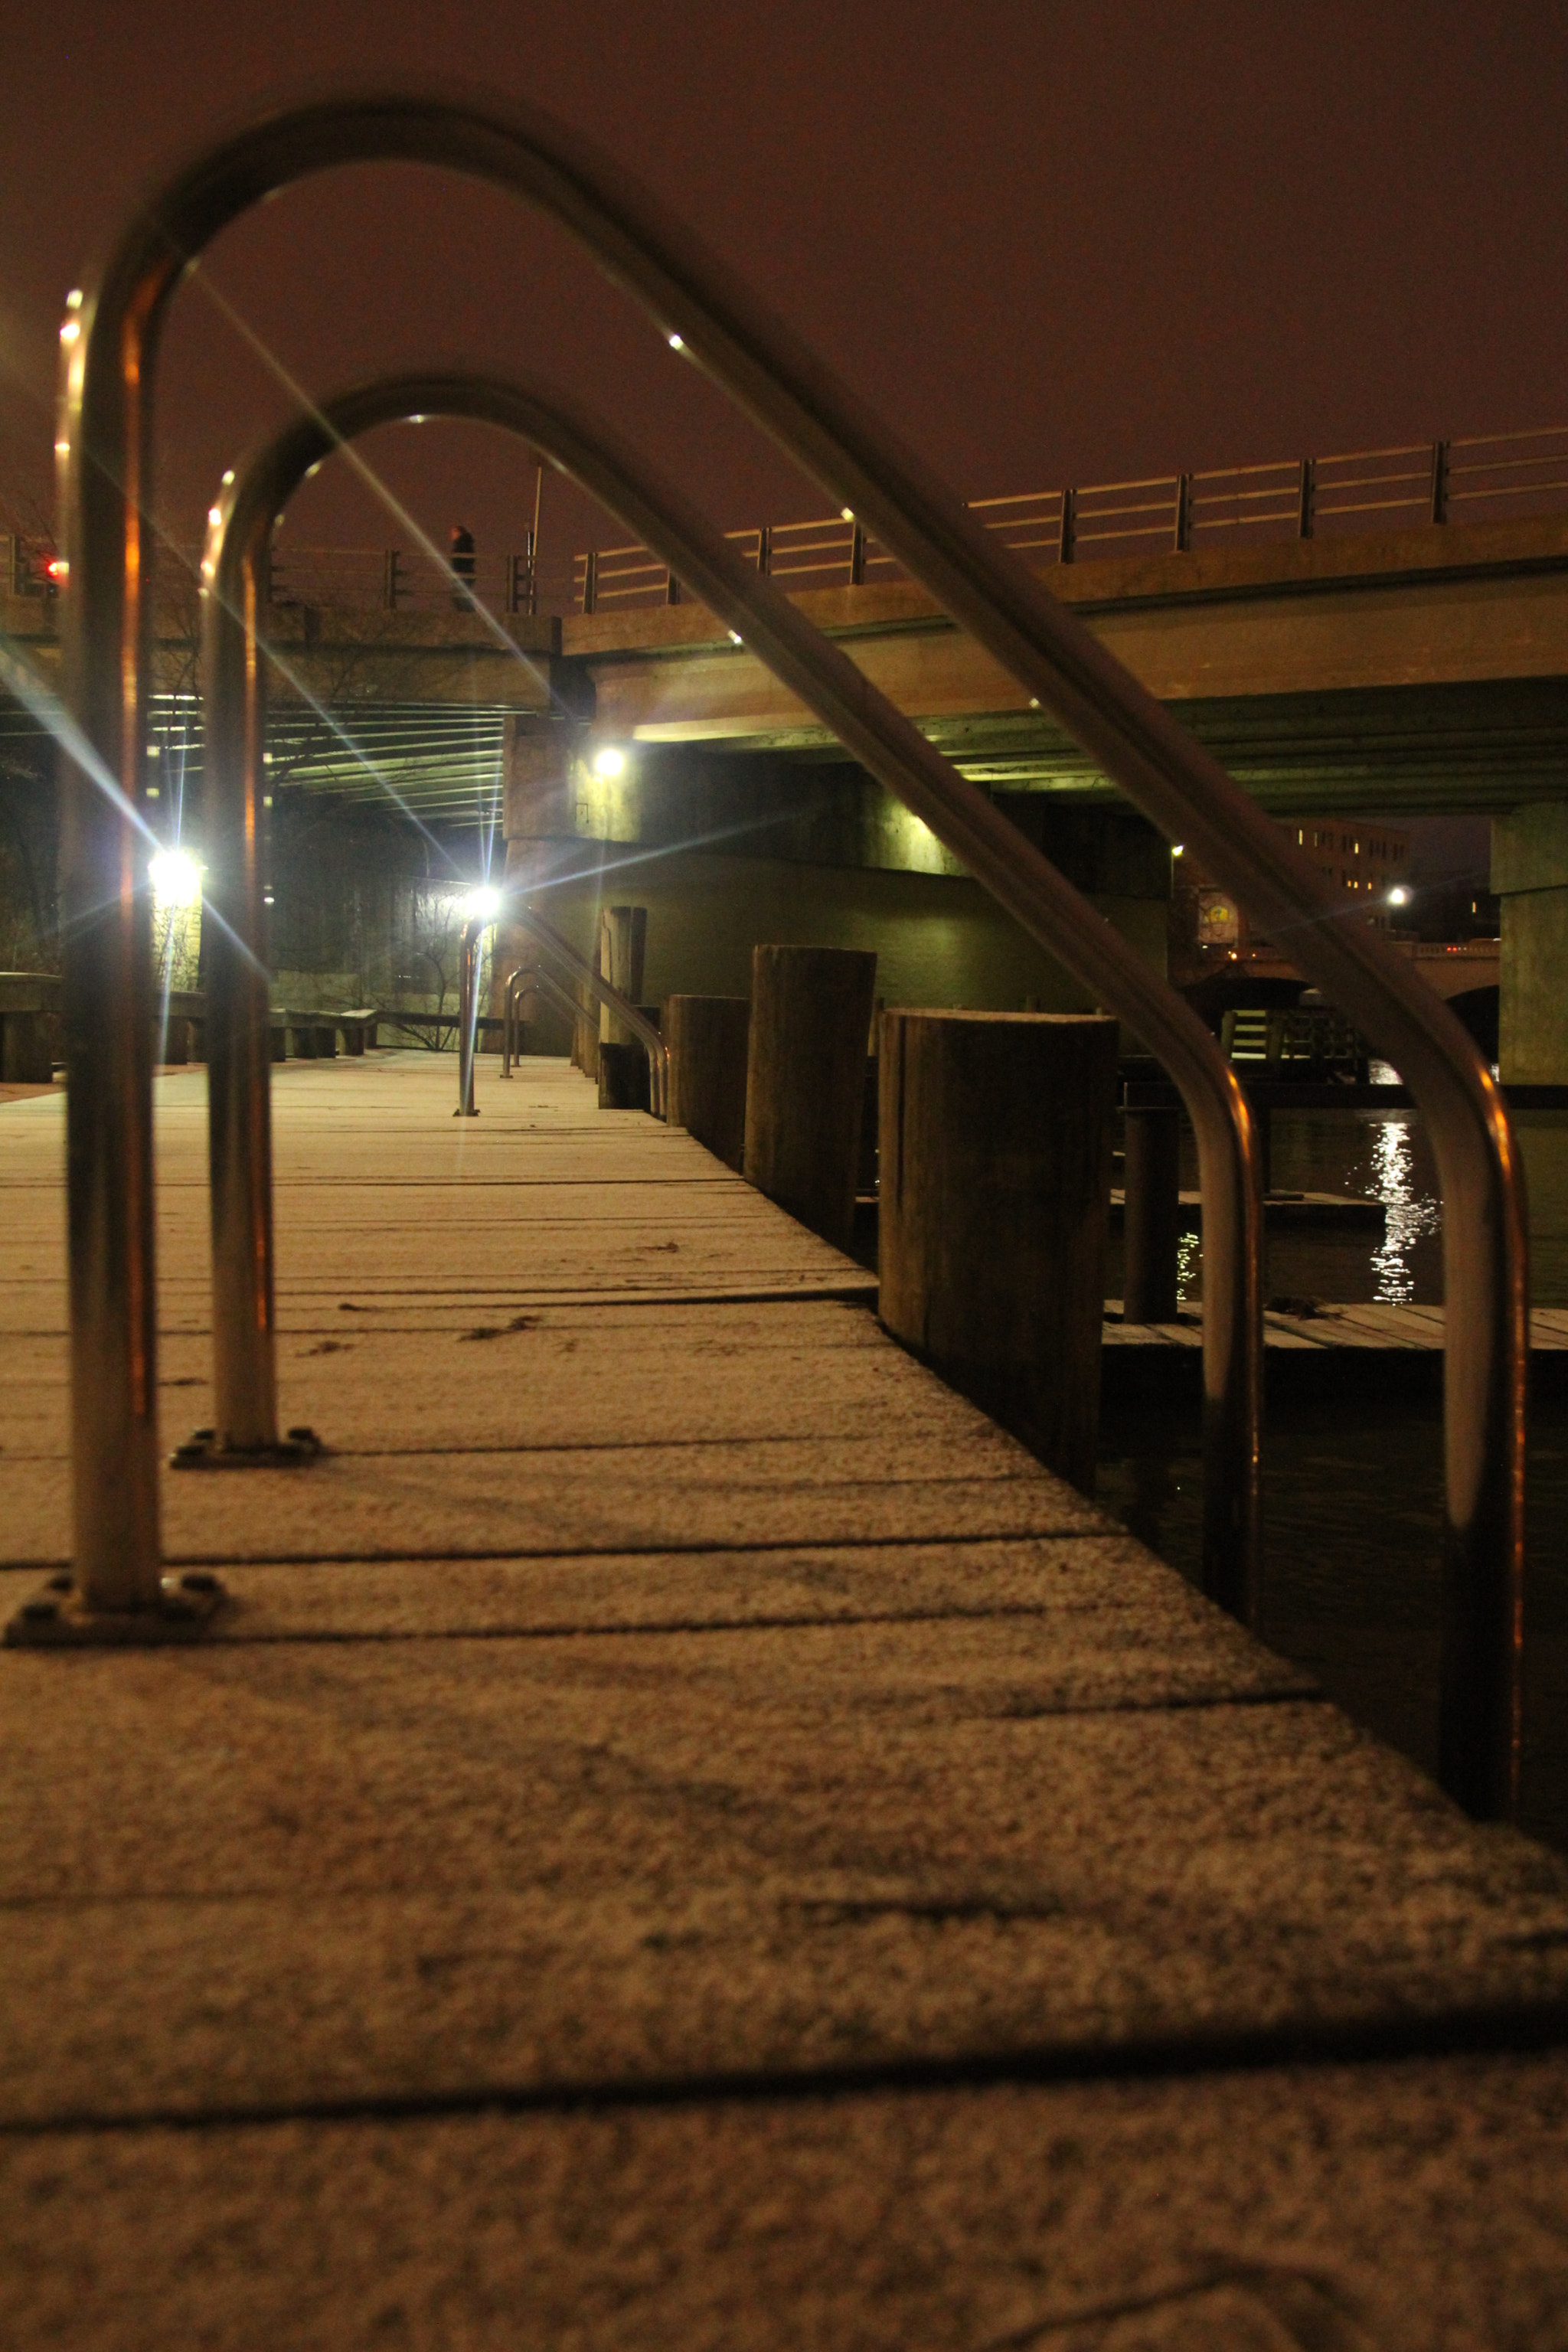 Canon EOS 1200D (EOS Rebel T5 / EOS Kiss X70 / EOS Hi) + Tamron 18-270mm F3.5-6.3 Di II VC PZD sample photo. Bridge at night. 在晚上的橋樑。 puente por la noche 夜の橋。 photography